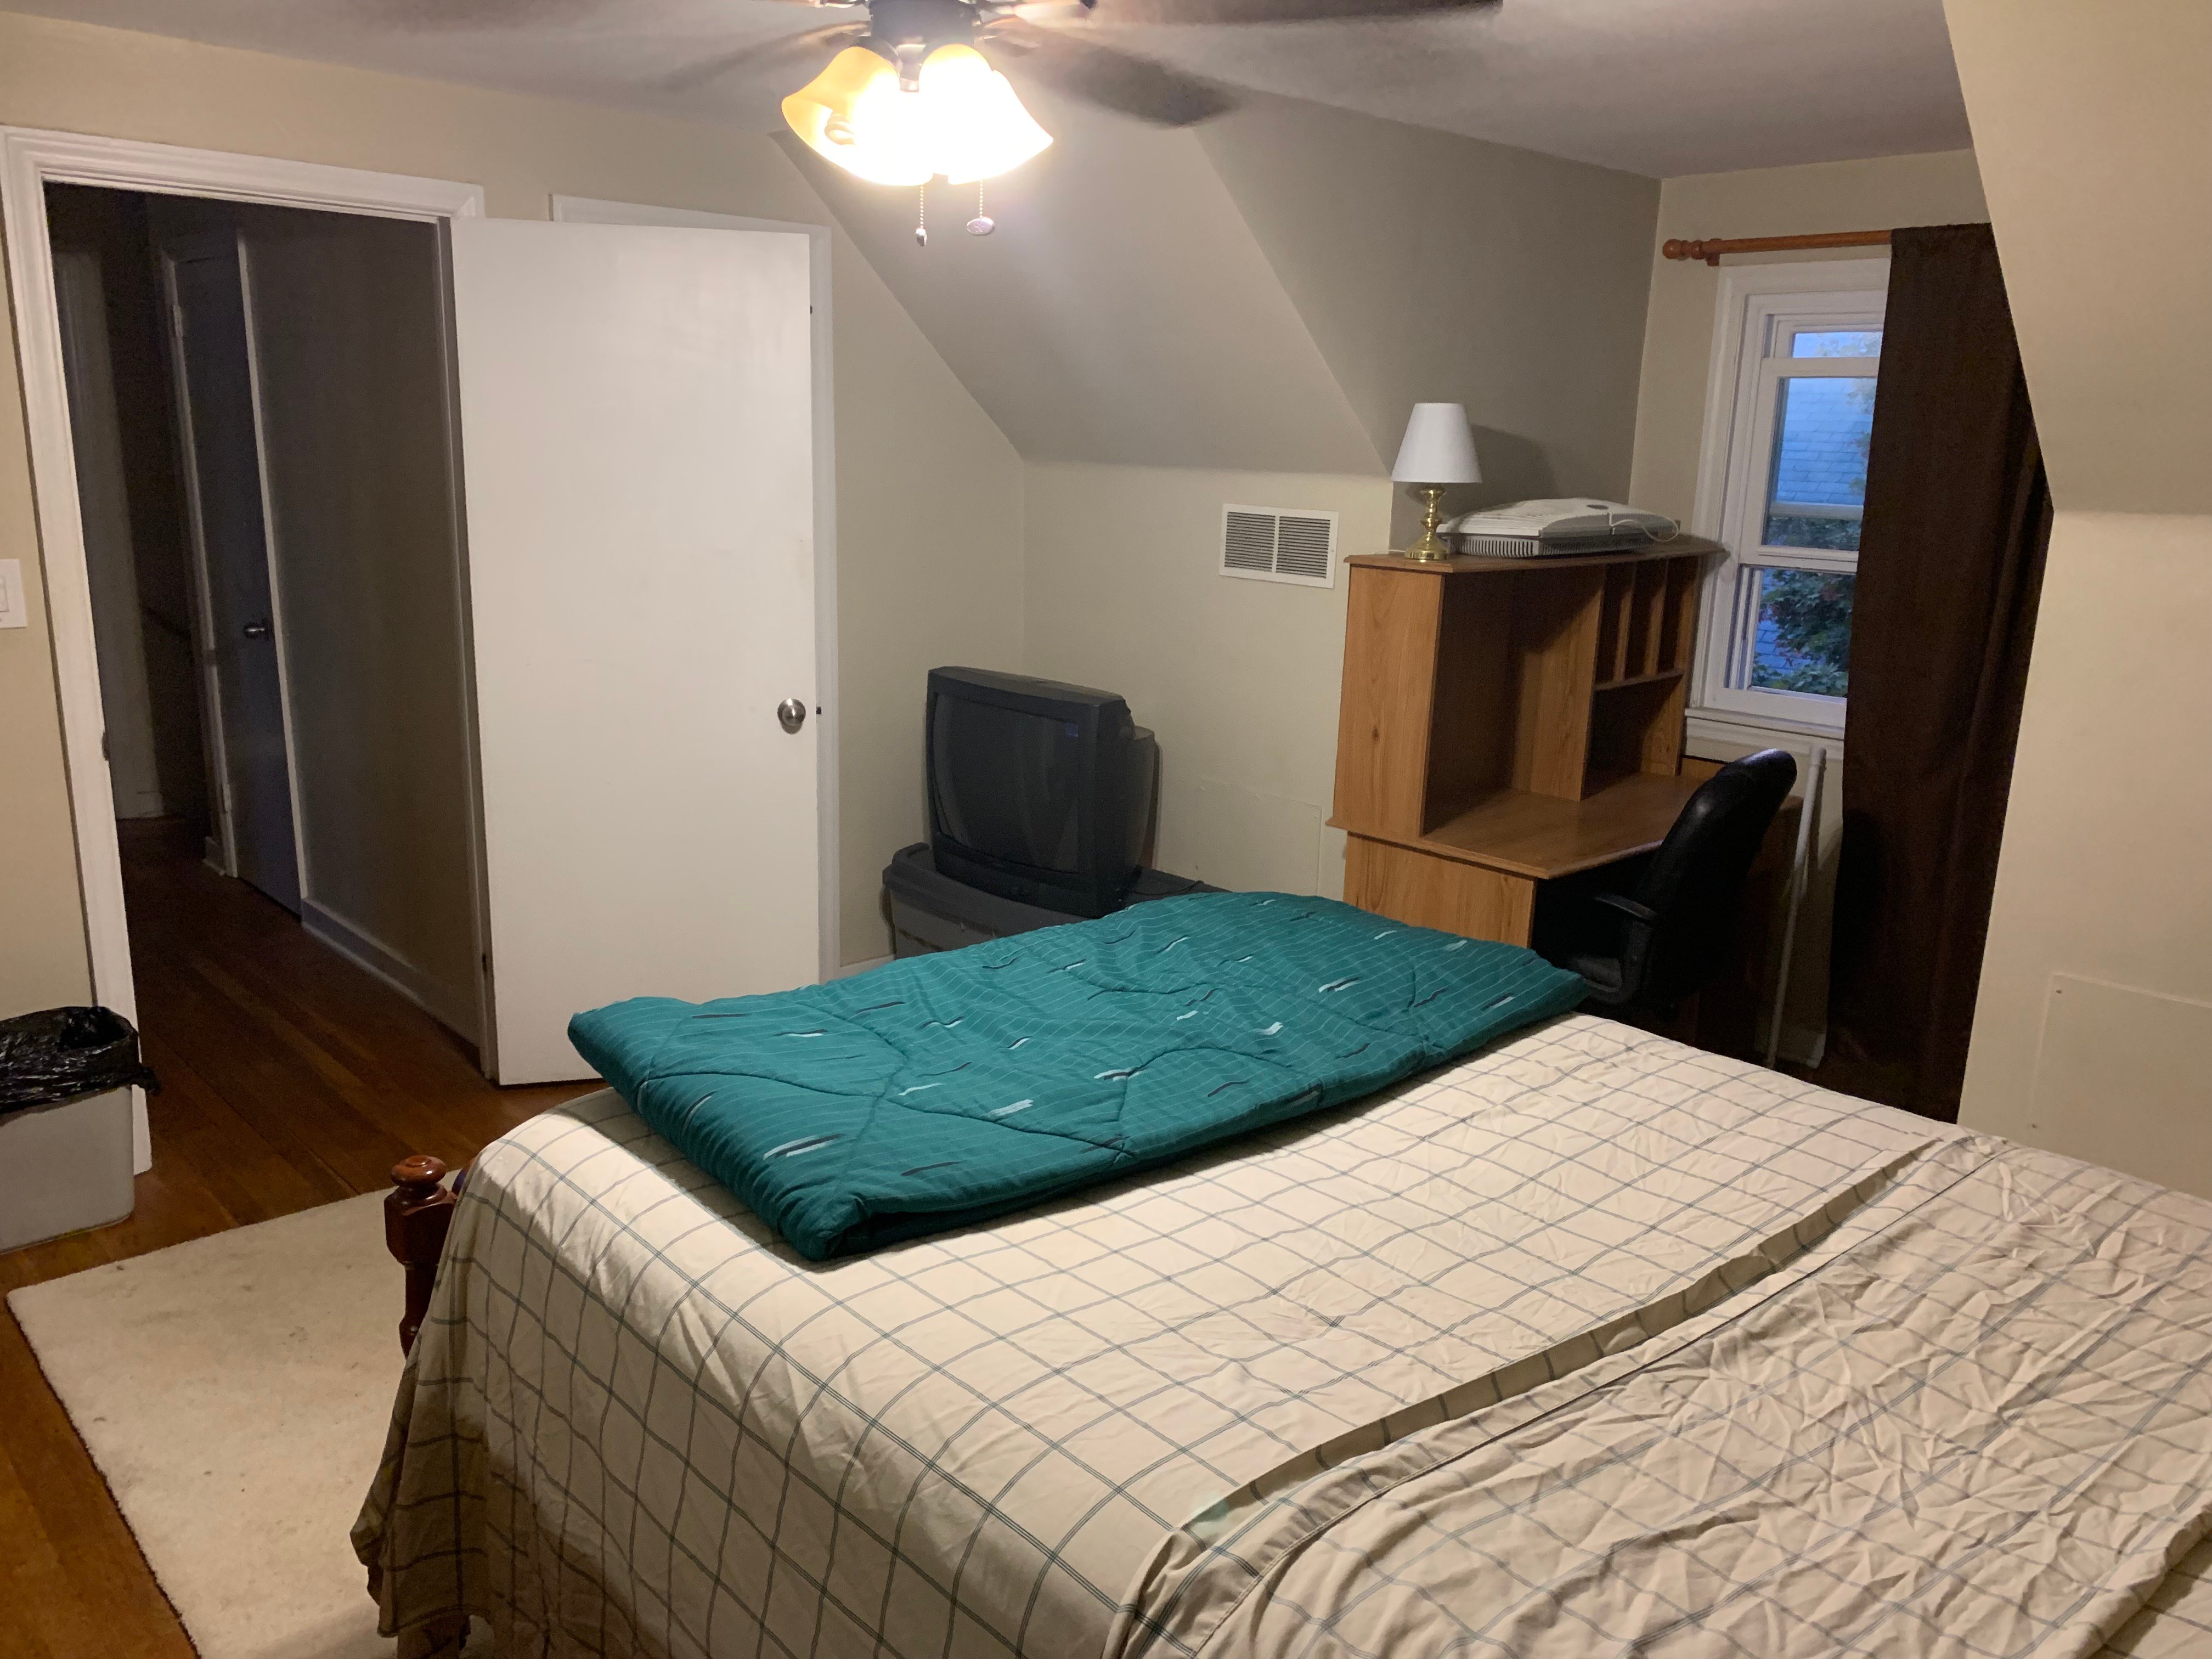 Rooms for Rent in Wilmington DE | RoommateLocator.com